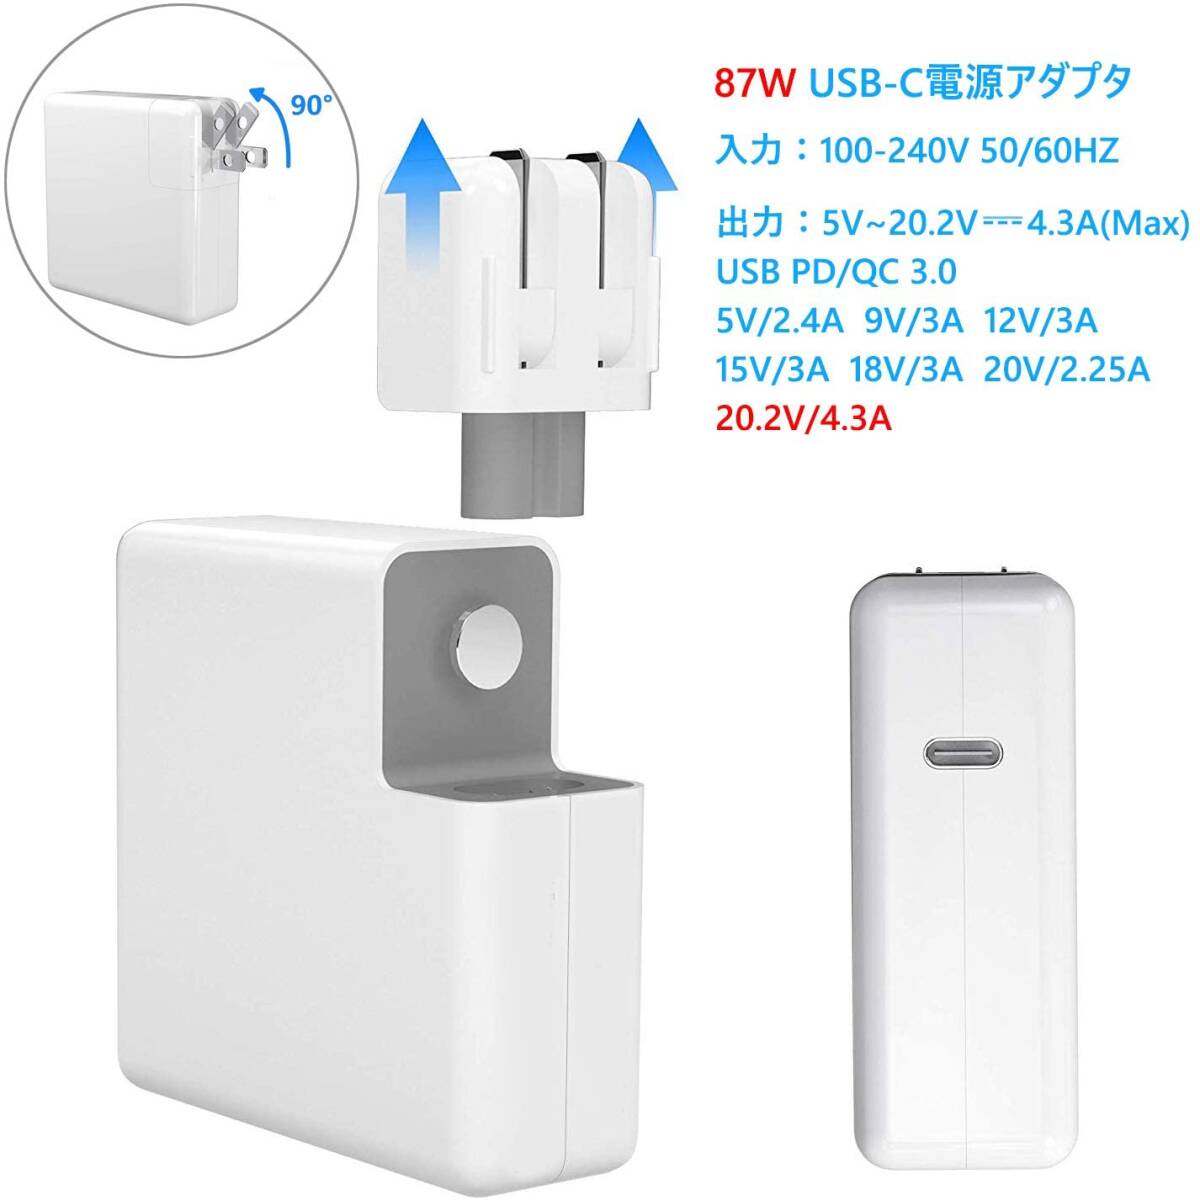 96W USB C 急速充電器 Macbook Pro Type-C アダプター PD タイプ-C 電源アダプタ _画像3